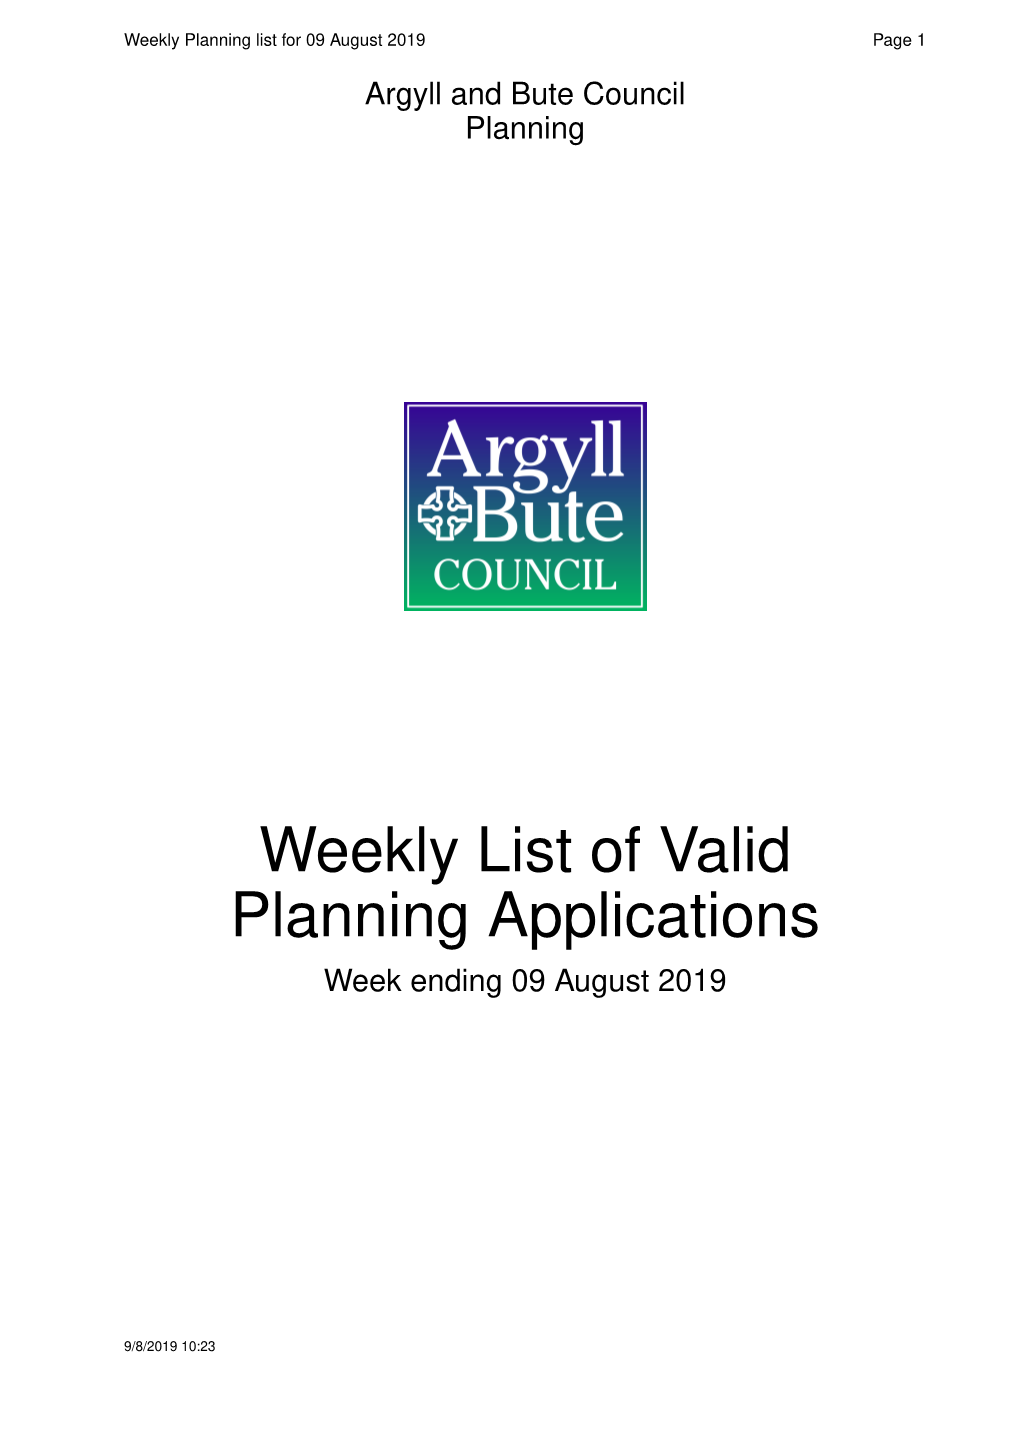 Weekly List of Valid Planning Applications Week Ending 09 August 2019